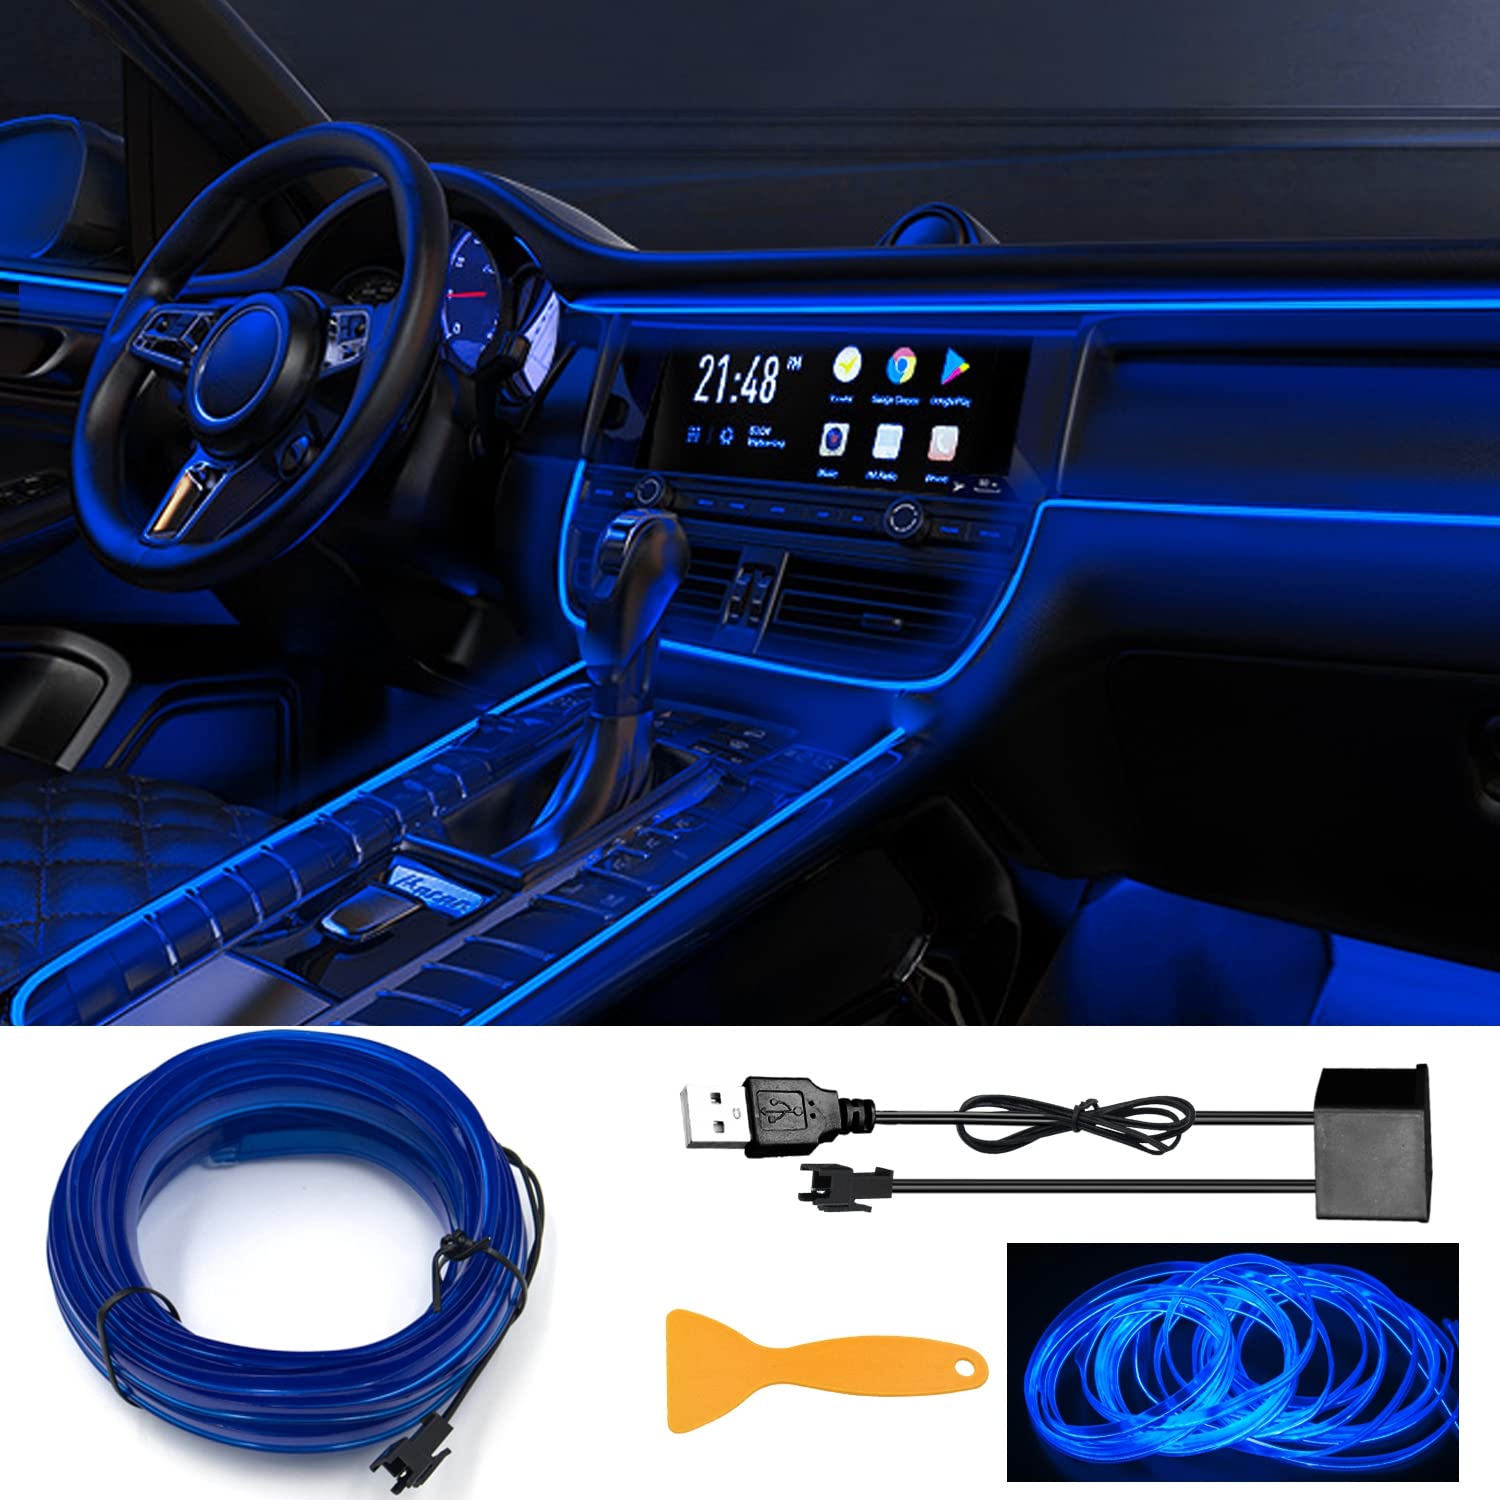 EL Wires Car Kit, EL Draht, EL Draht Neon Leuchtende, Flexible Neon EL Draht, USB EL Wire, Flexible Neonlichtröhre 5m/16.5ft Auto Dekorationen LED Lichter für Auto Interieur von YEKUYEKU